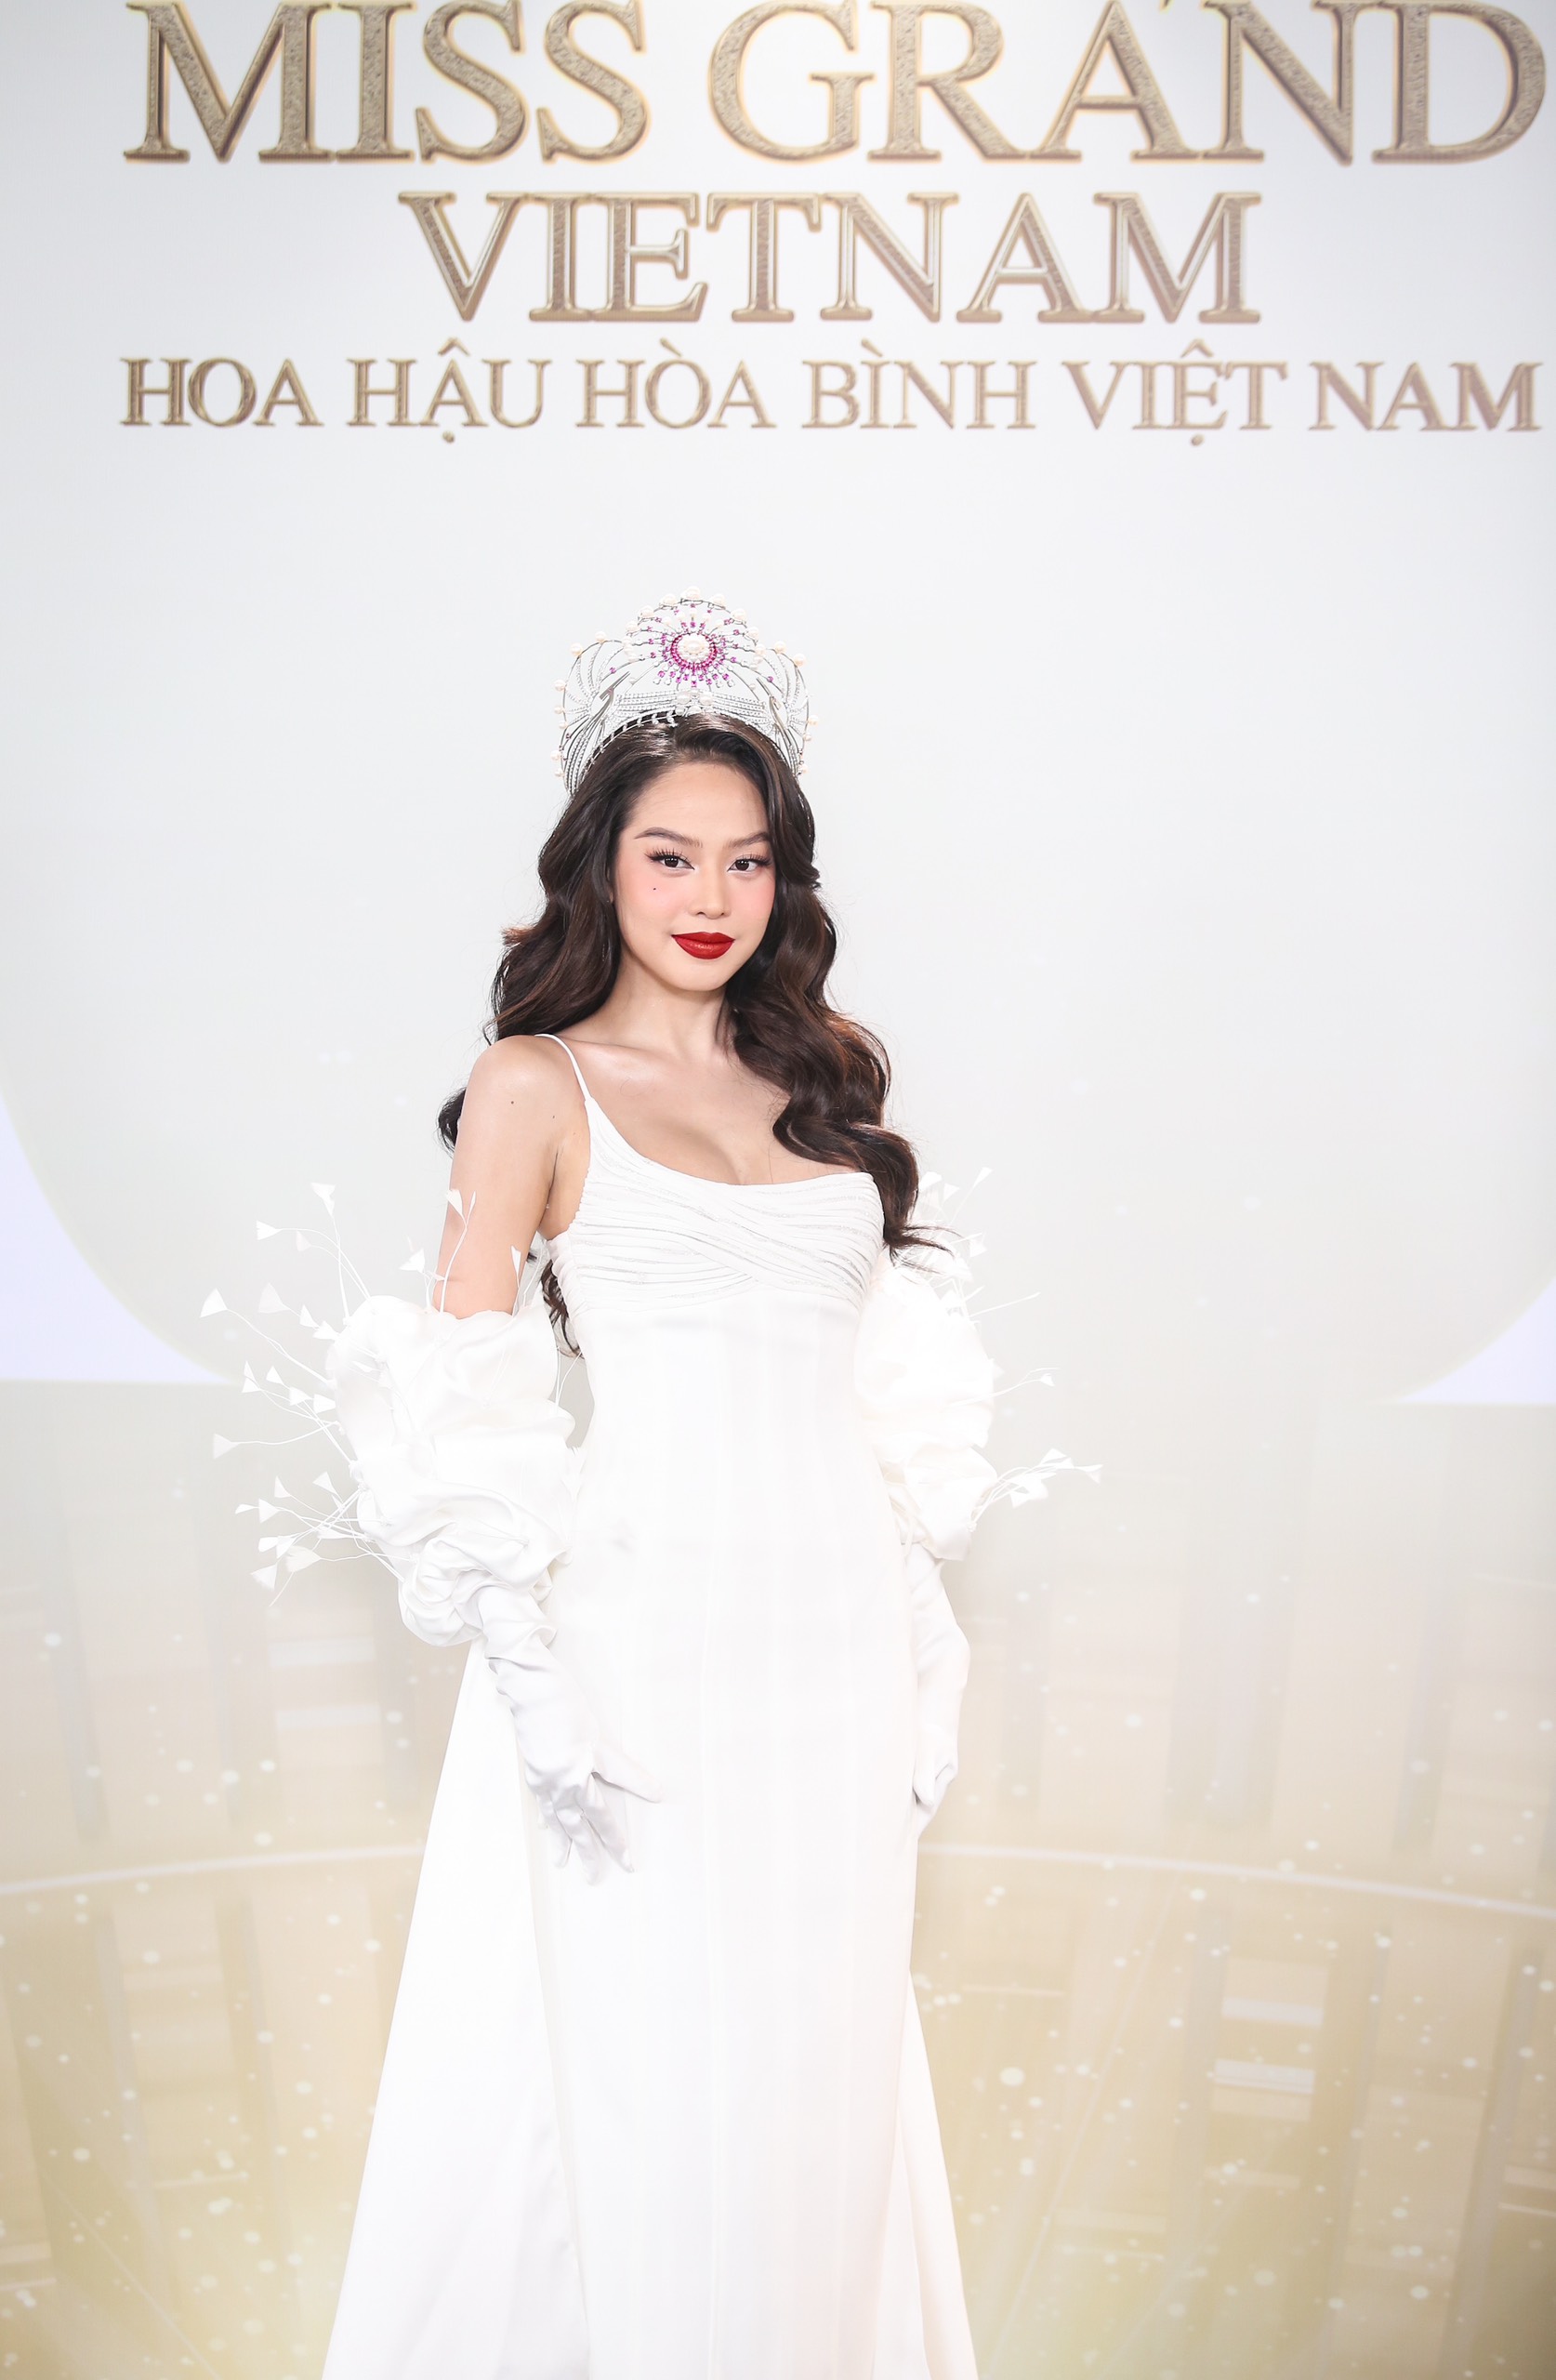 Phát La thoải mái chụp ảnh cùng Hoa hậu Thiên Ân giữa tin đồn tình cảm - Ảnh 4.